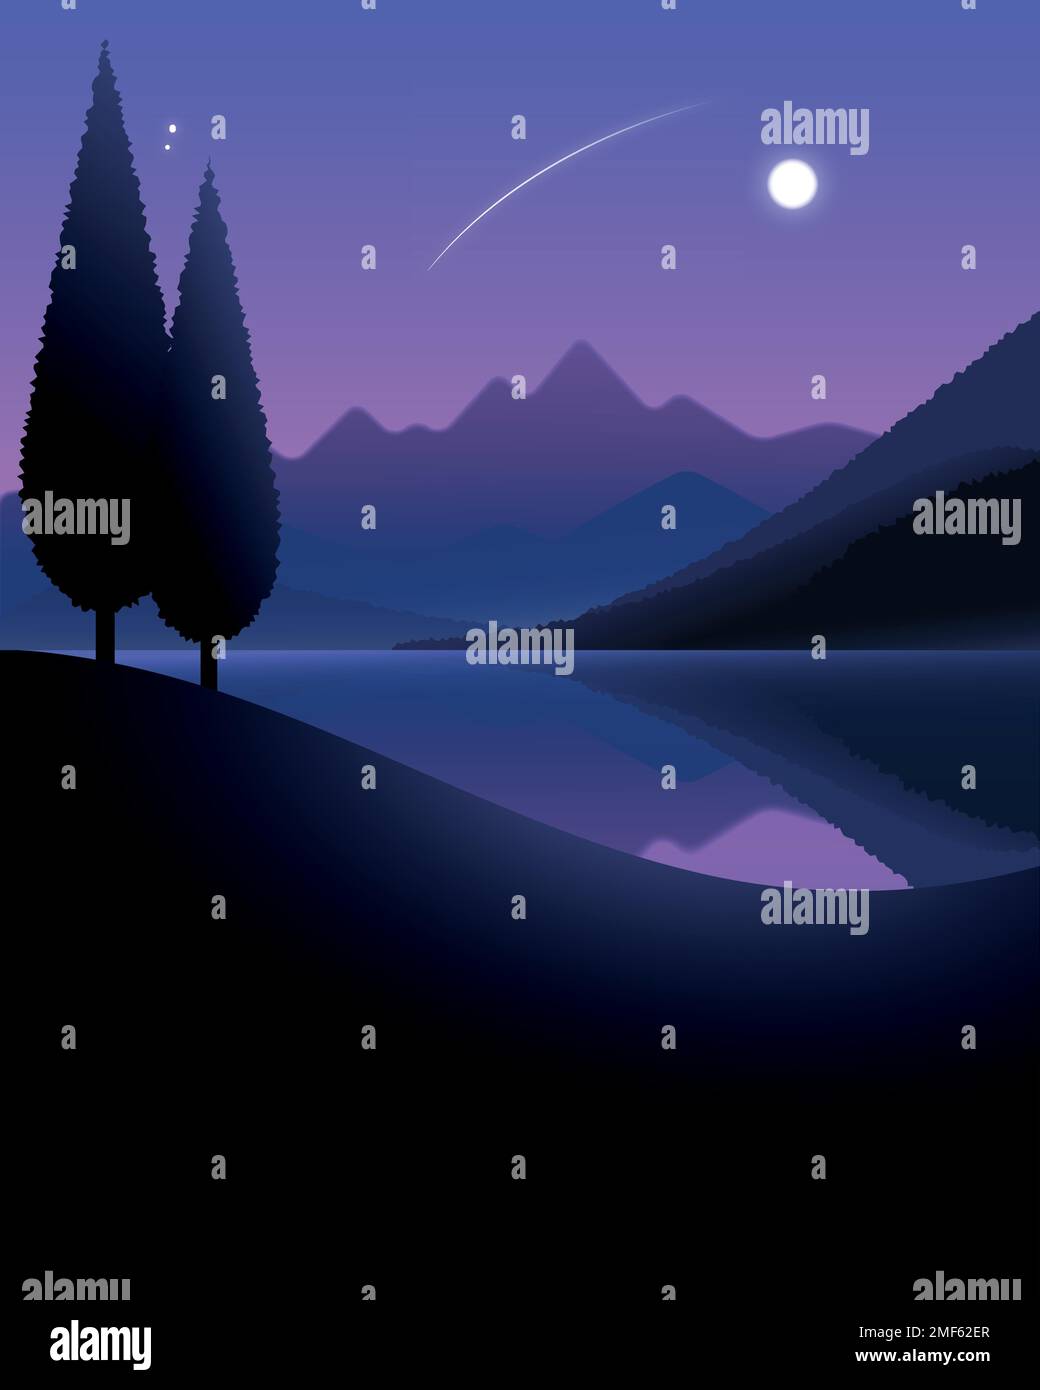 Paysage nocturne du lac et des montagnes sous la lune avec des arbres au premier plan. Illustration vectorielle. Illustration de Vecteur